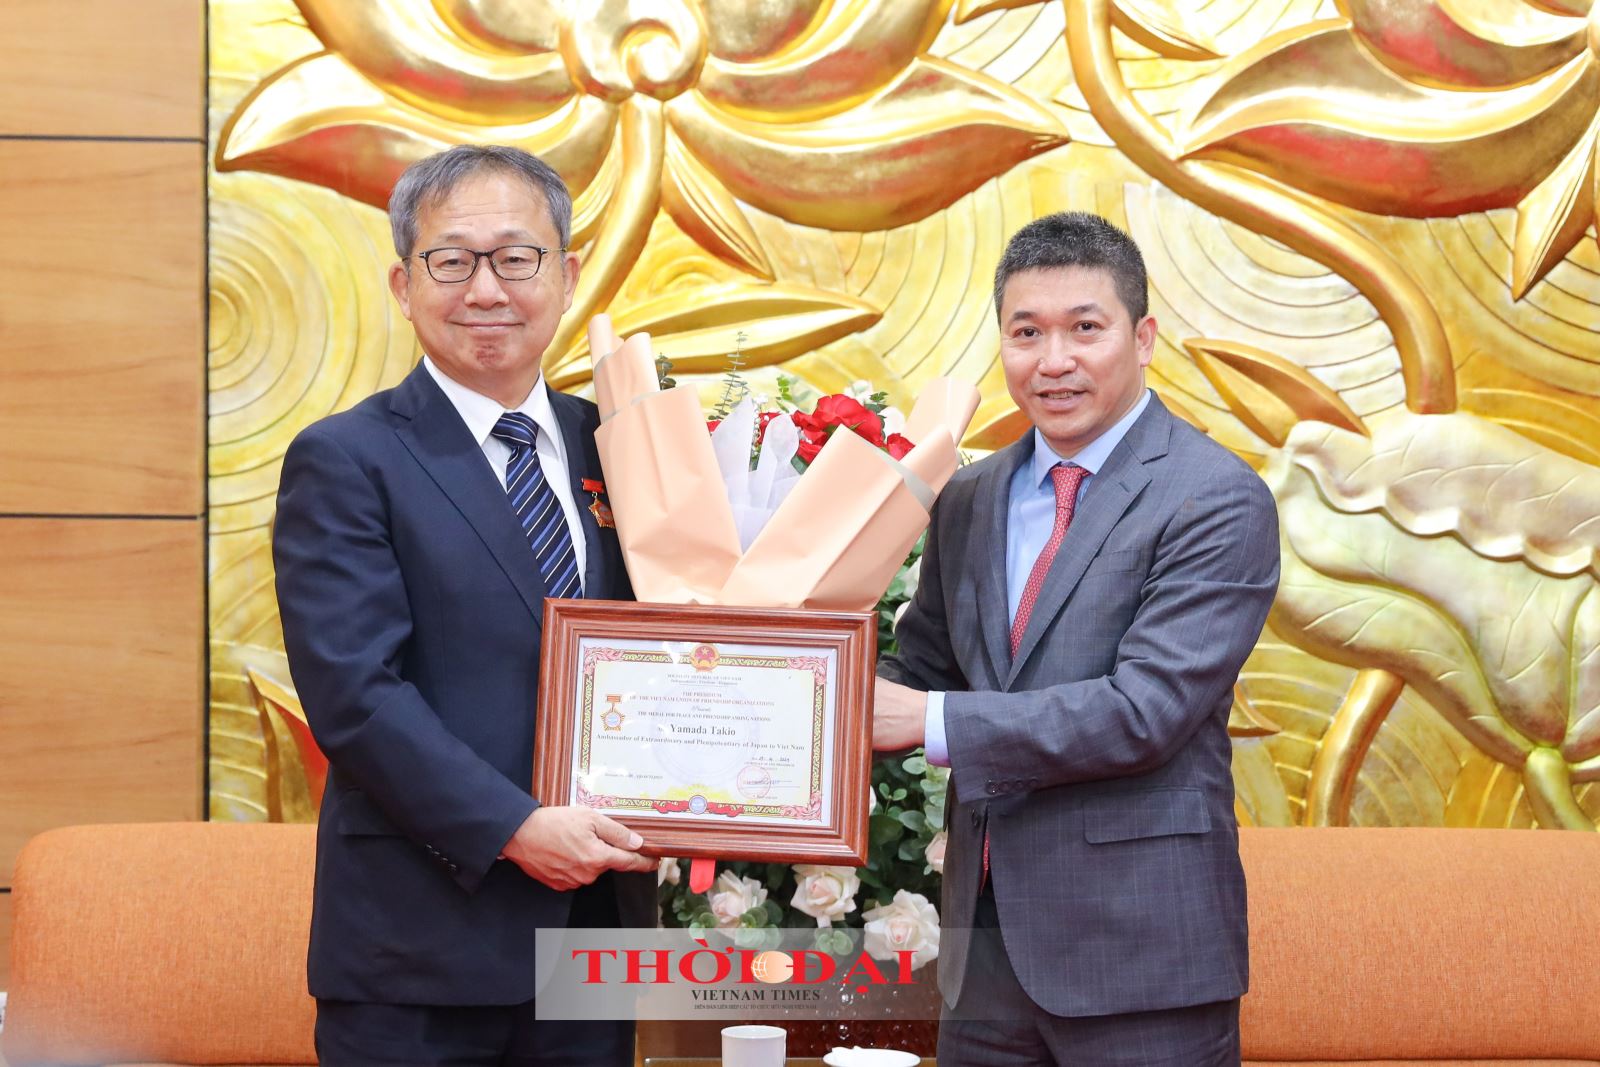 Đại sứ Yamada Takio: sẽ nỗ lực đóng góp cho tình hữu nghị, hợp tác giữa nhân dân Việt Nam - Nhật Bản